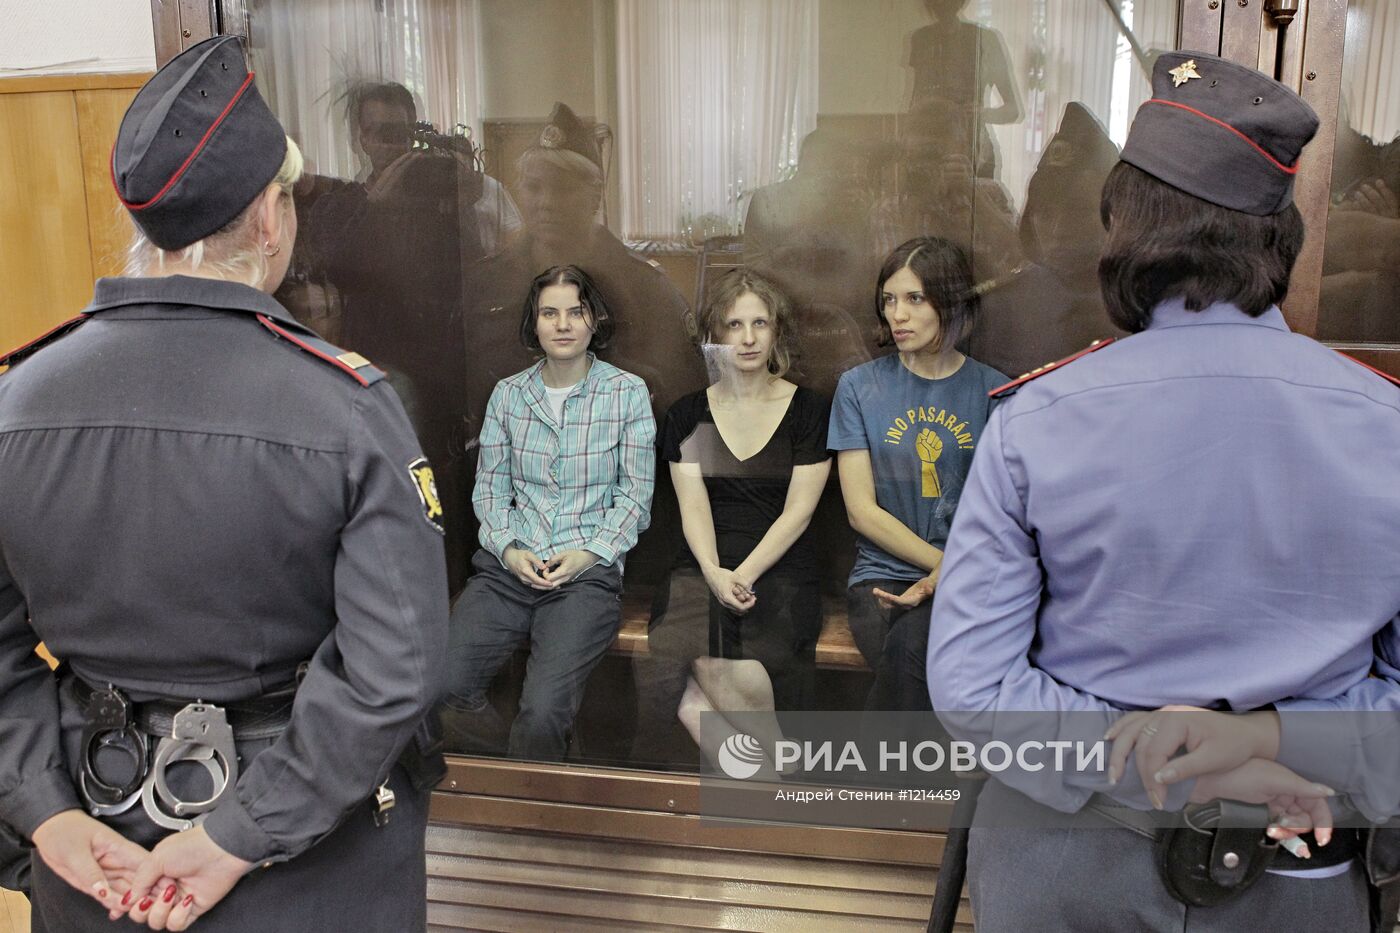 Оглашение приговора участницам панк-группы Pussy Riot